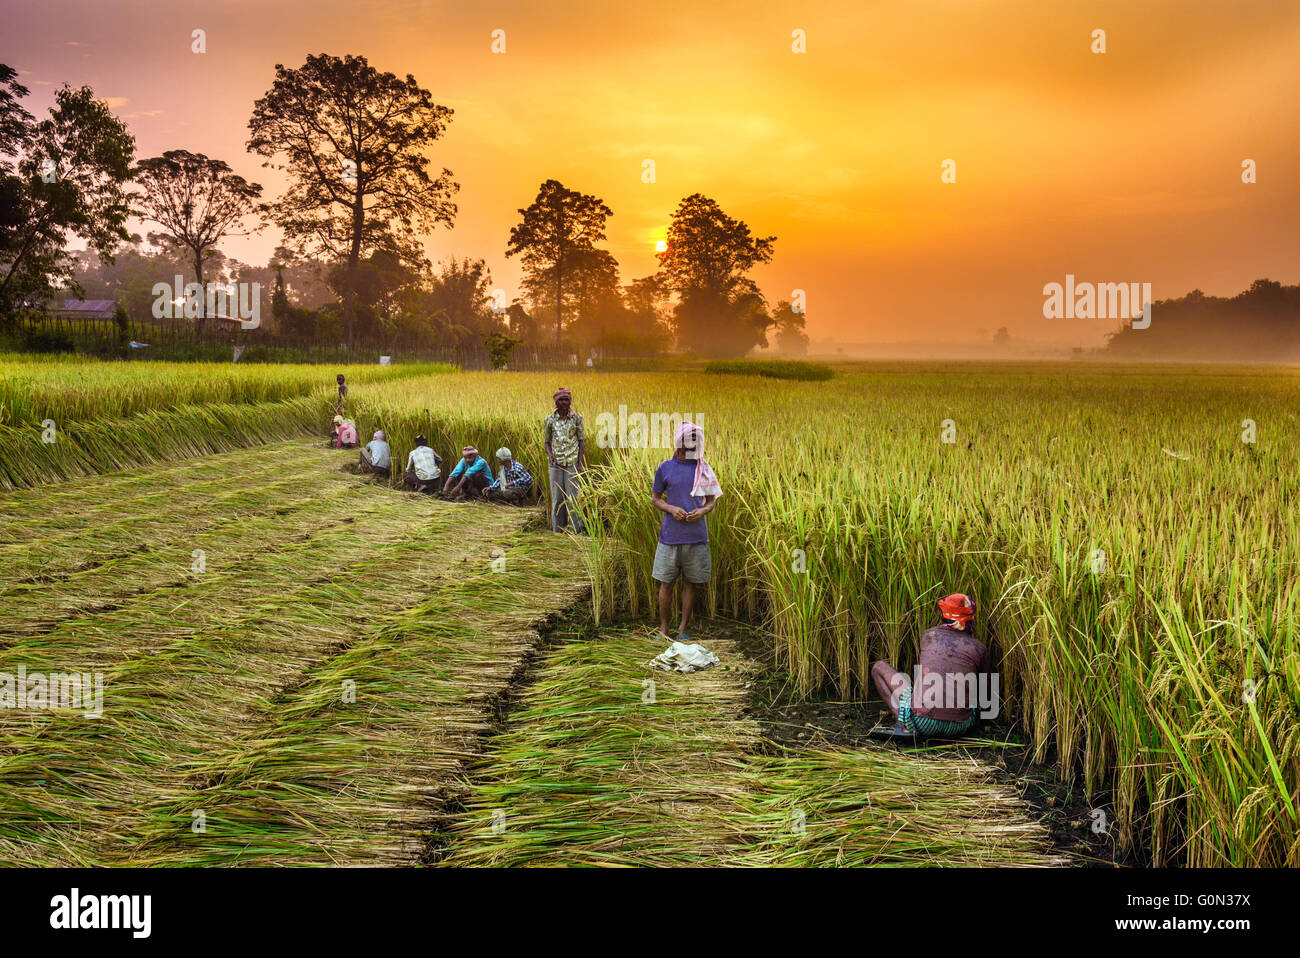 Népalais travaillant dans un champ de riz au lever du soleil Banque D'Images